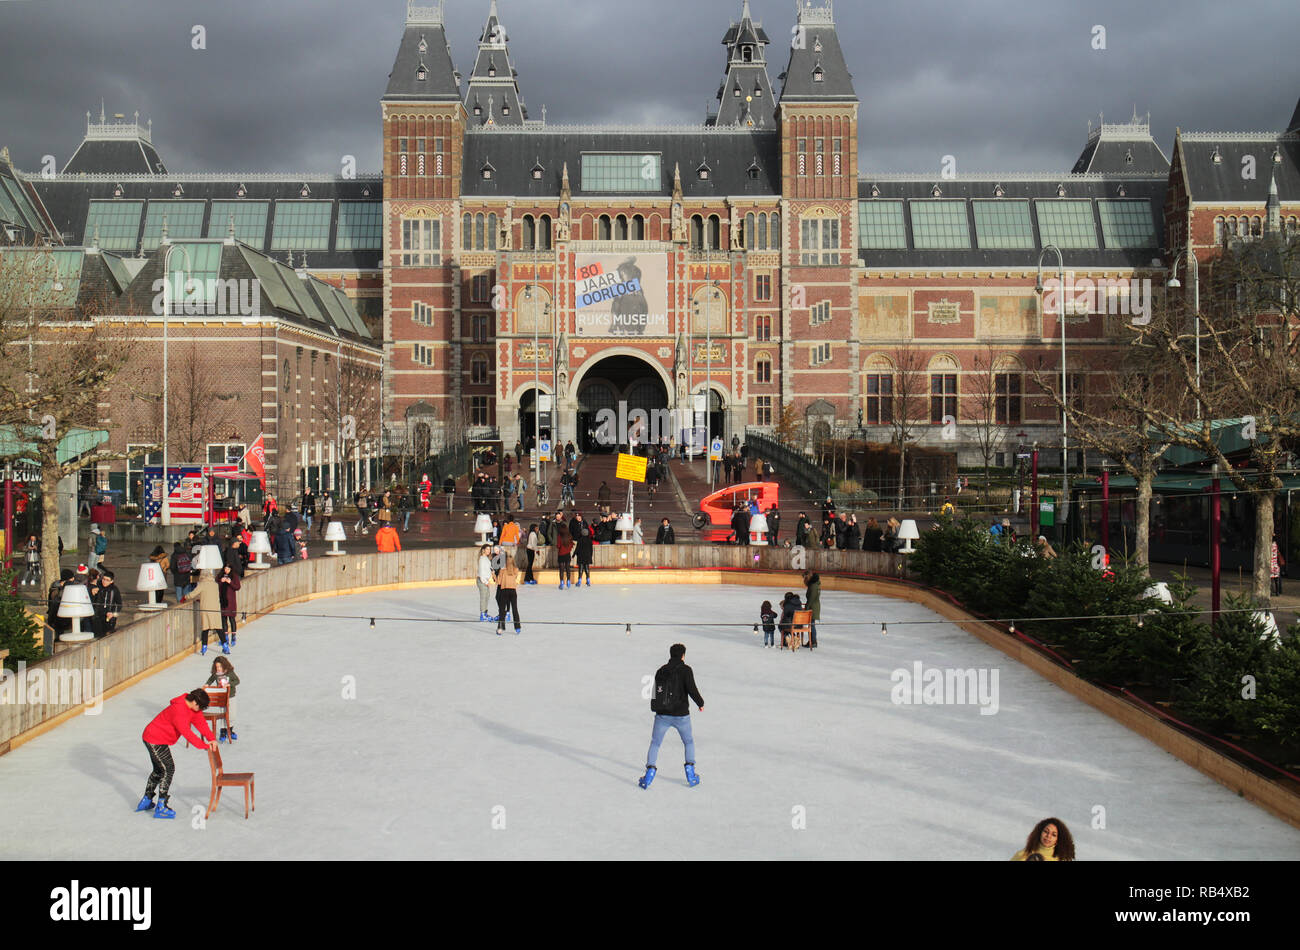 Die Skater auf der Eisbahn im Museum Quadrat, Amsterdam, im Dezember mit dem Rijksmuseum im Hintergrund Stockfoto